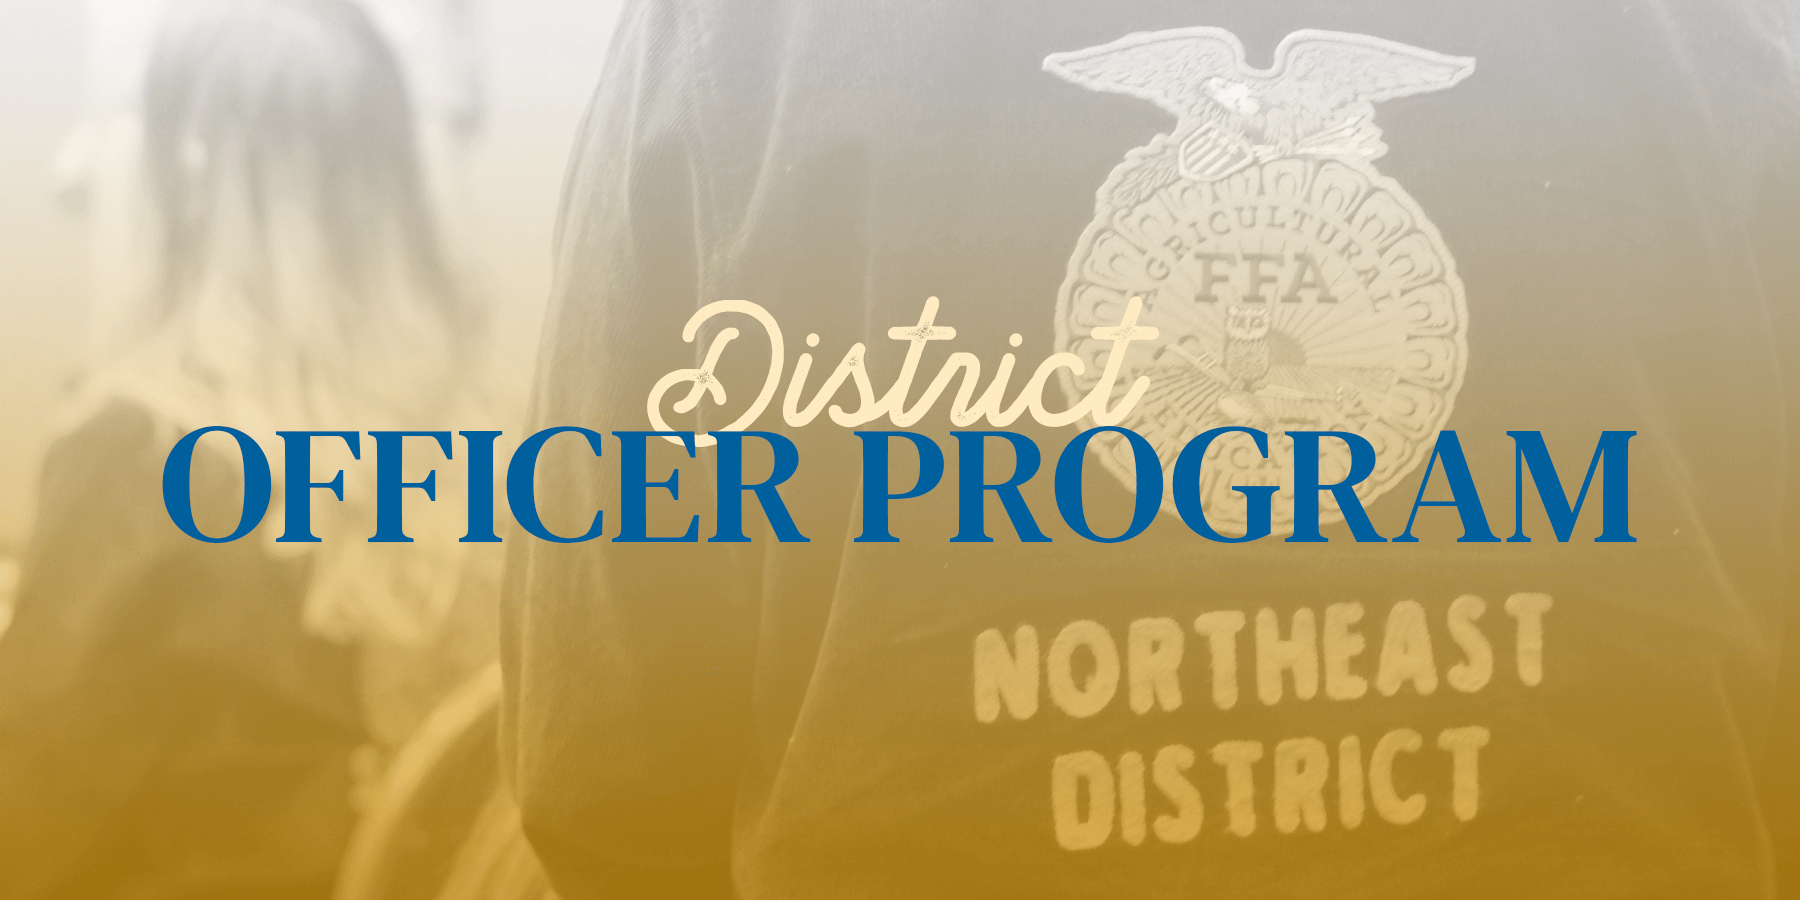 Image for District Officer Program